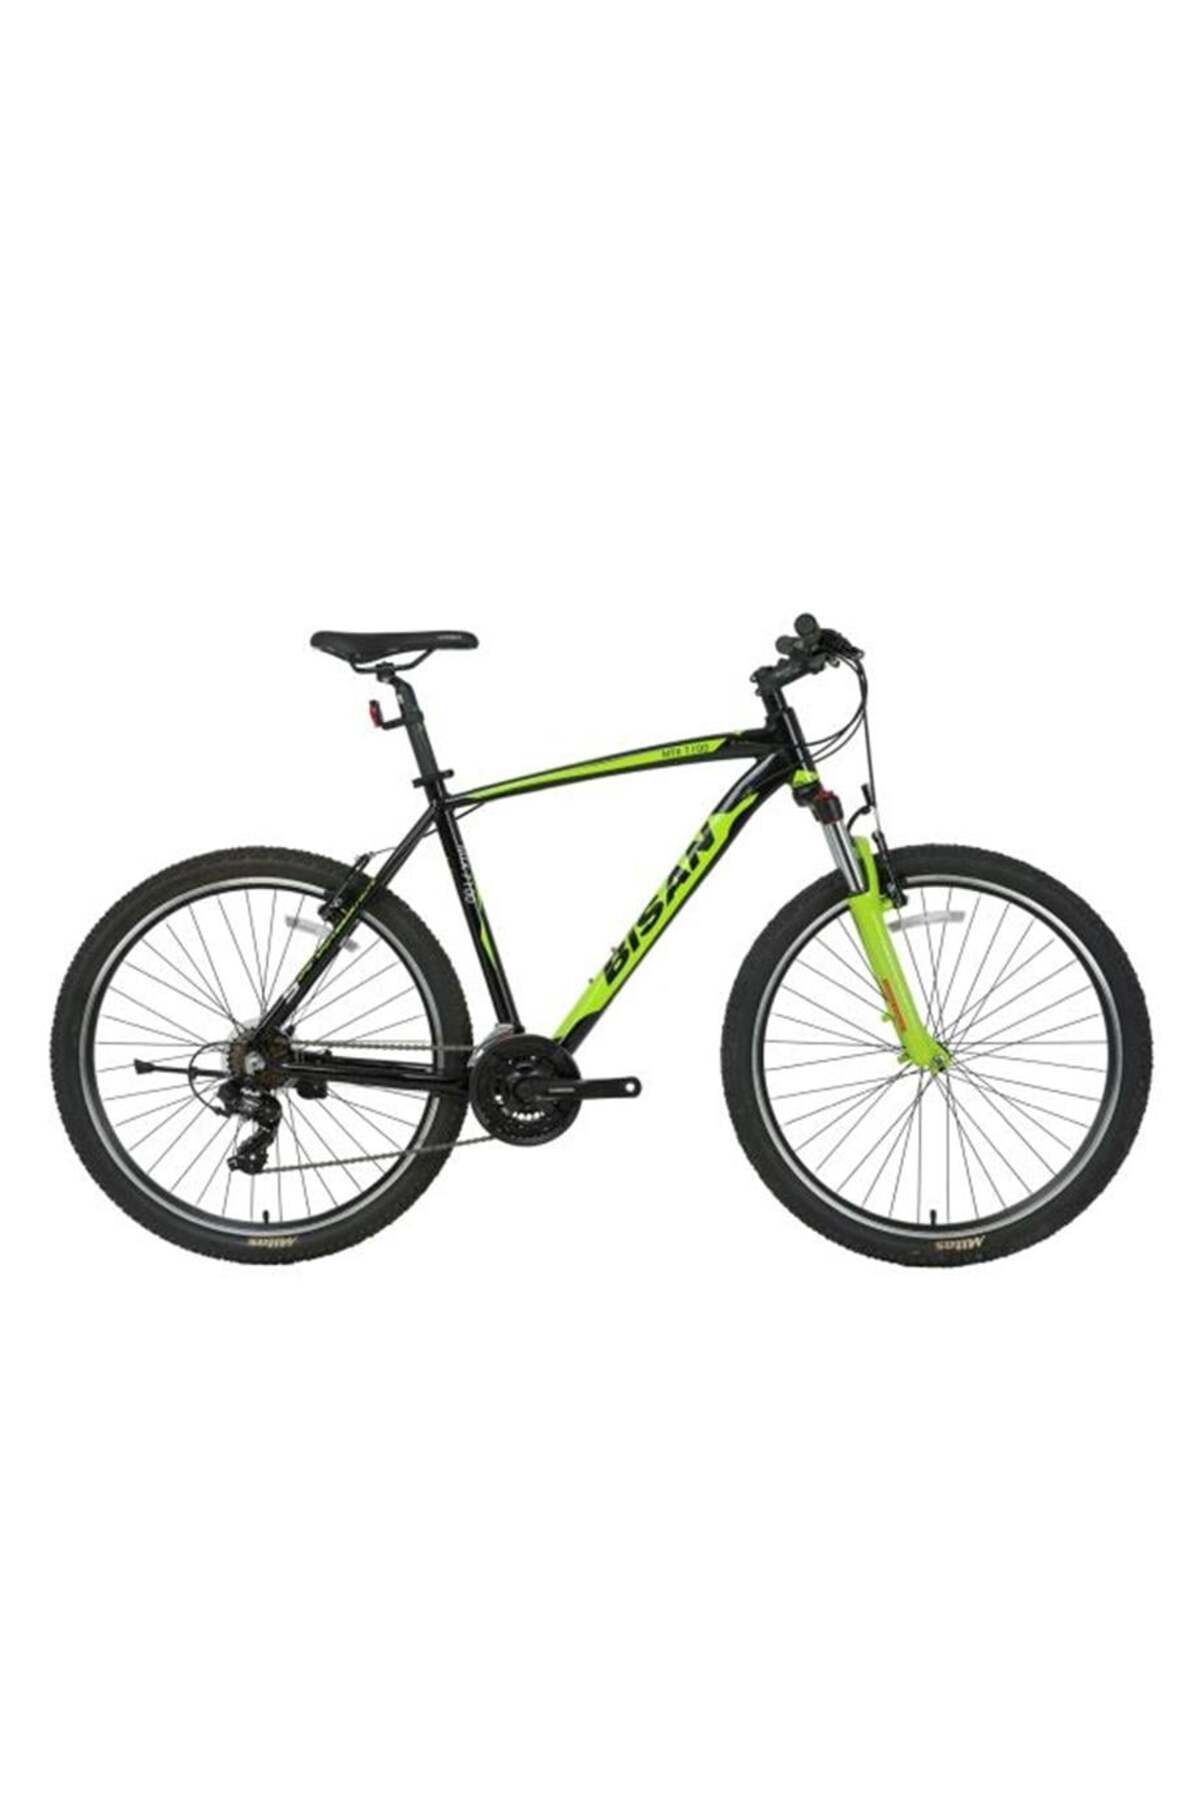 Bisan Mtx 7100 Erkek Dağ Bisikleti 53cm V 27.5 Jant 21 Vites Siyah Yeşil